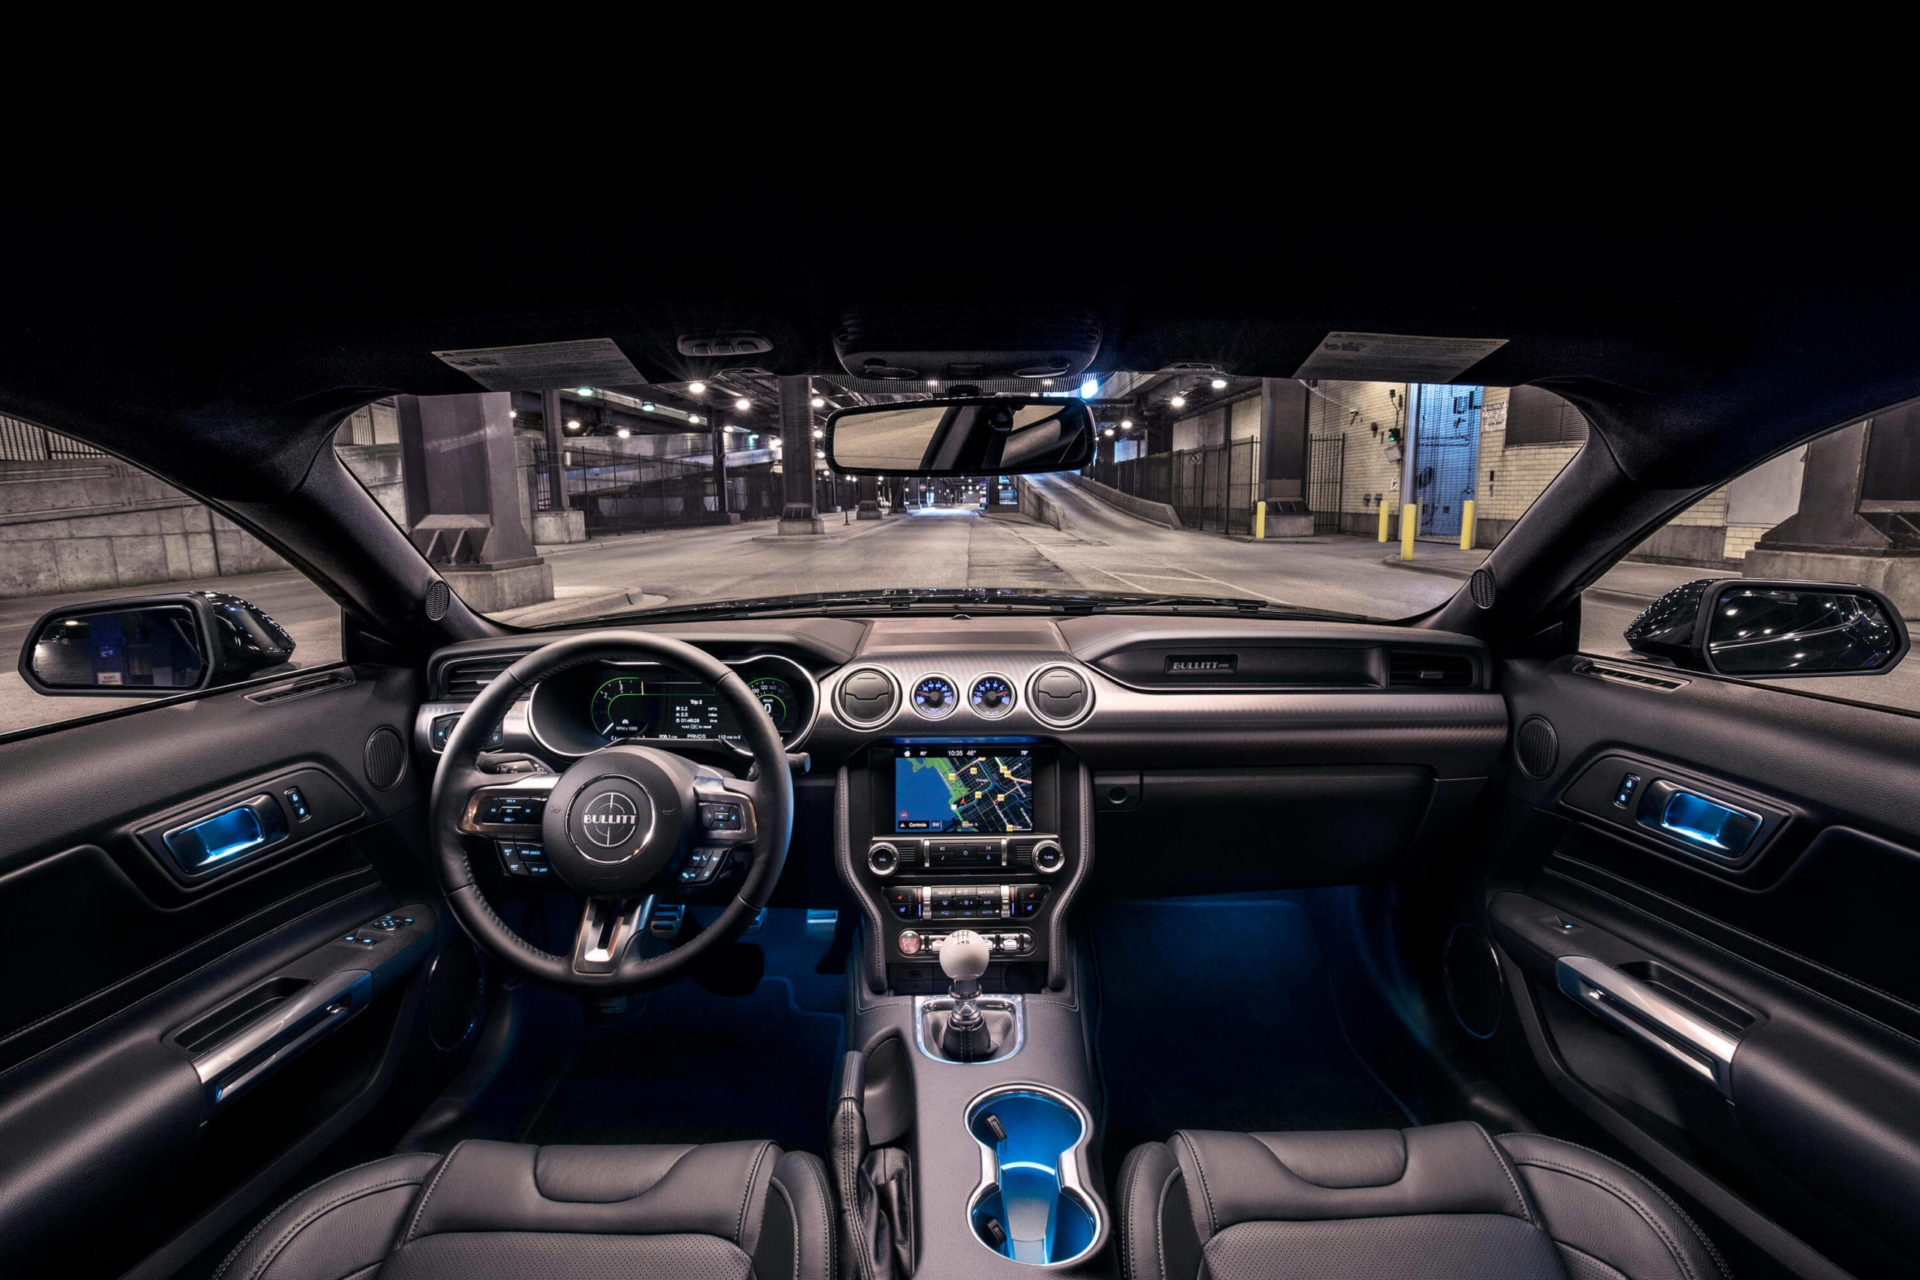 2019 Bullitt Mustang interior